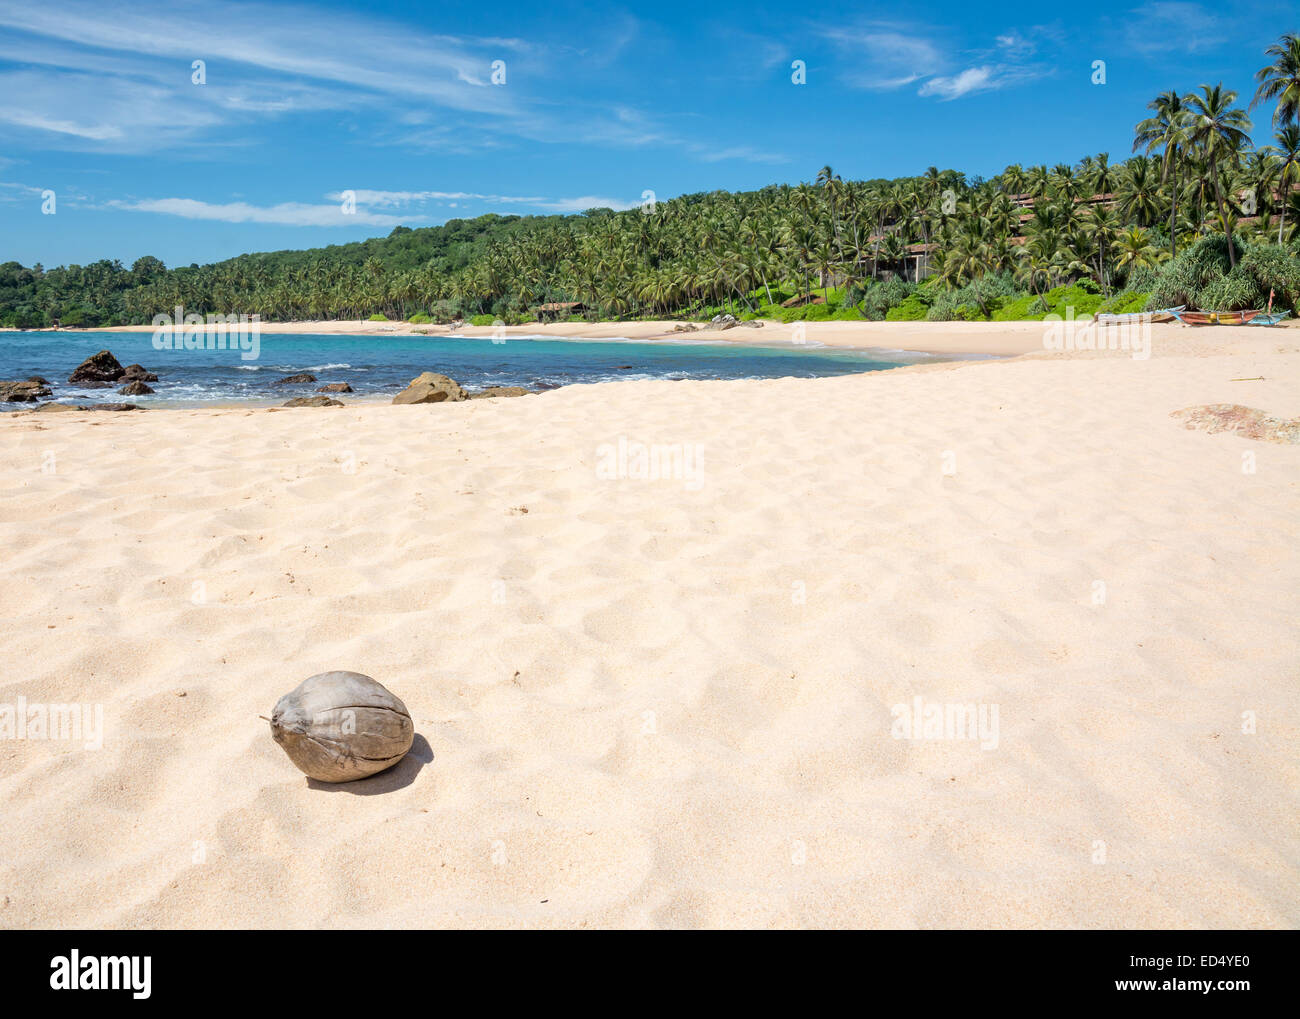 Spiaggia con noce di cocco. Paradise beach con sabbia bianca e noce di cocco. Aman beach, Tangalle, sud della provincia, Sri Lanka, in Asia. Foto Stock